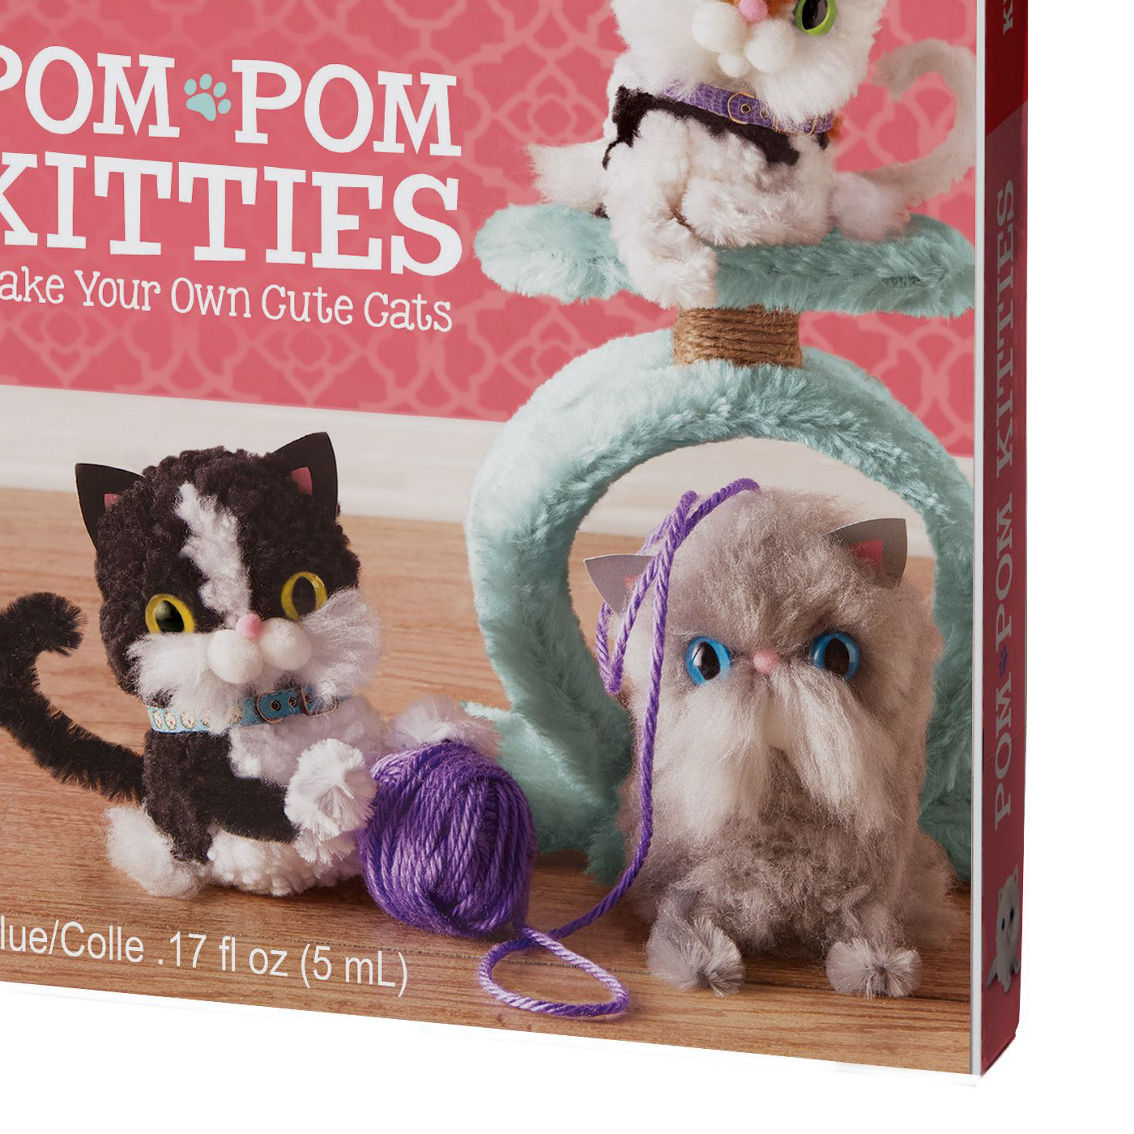 Klutz Pom-Pom Kitties - Image 2 of 5